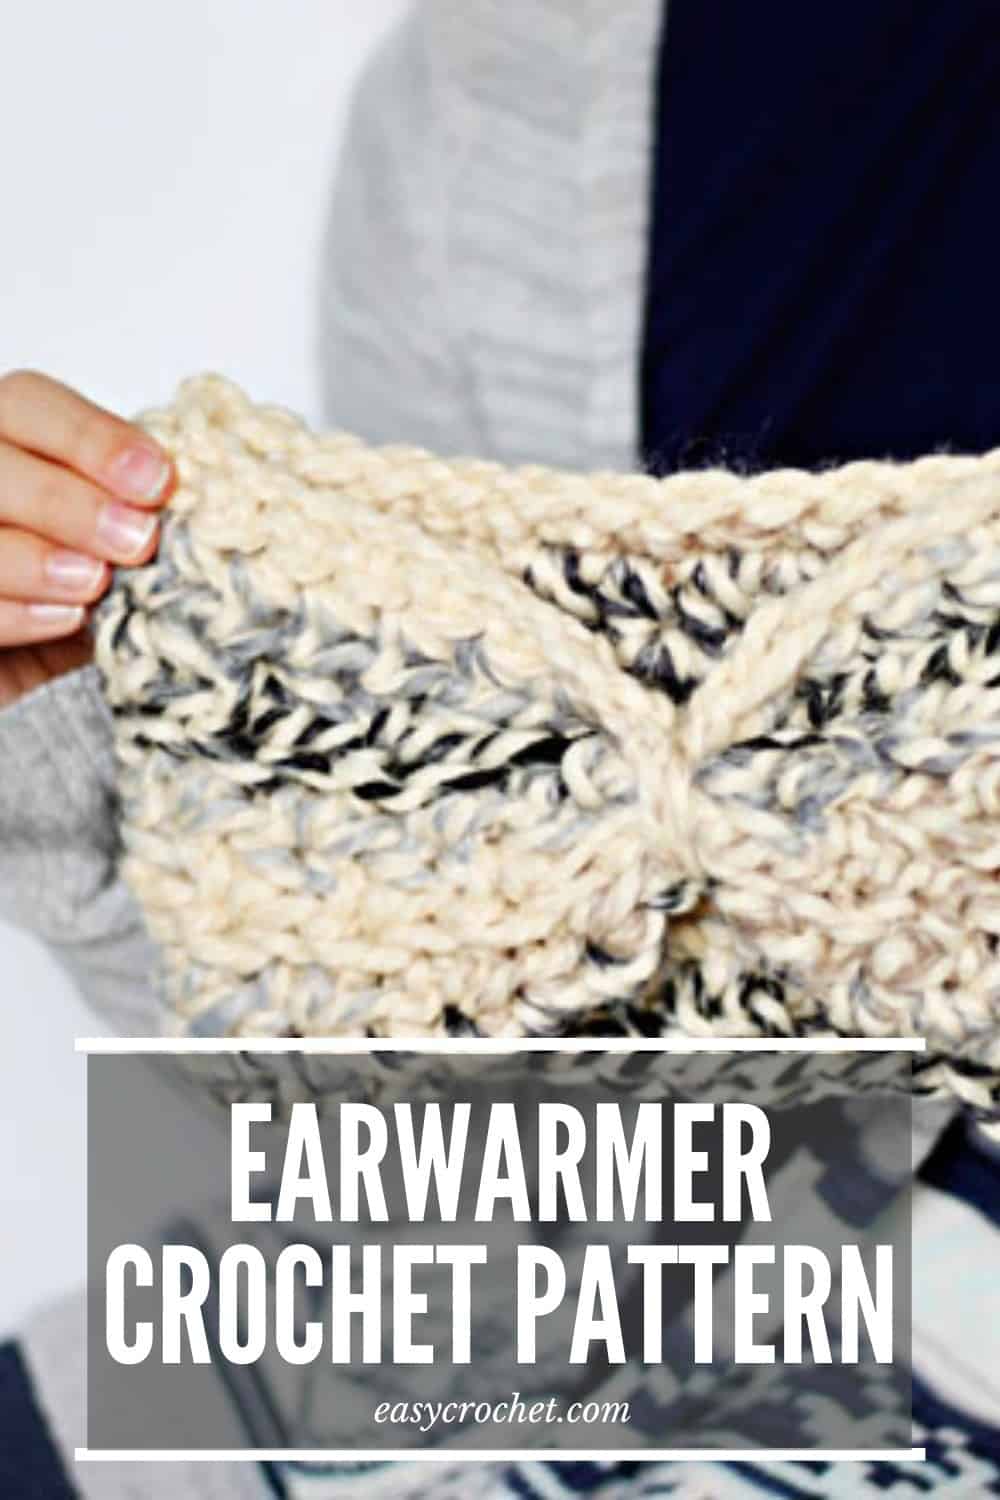 Free Earwarmer Crochet Pattern by Easy Crochet via @easycrochetcom